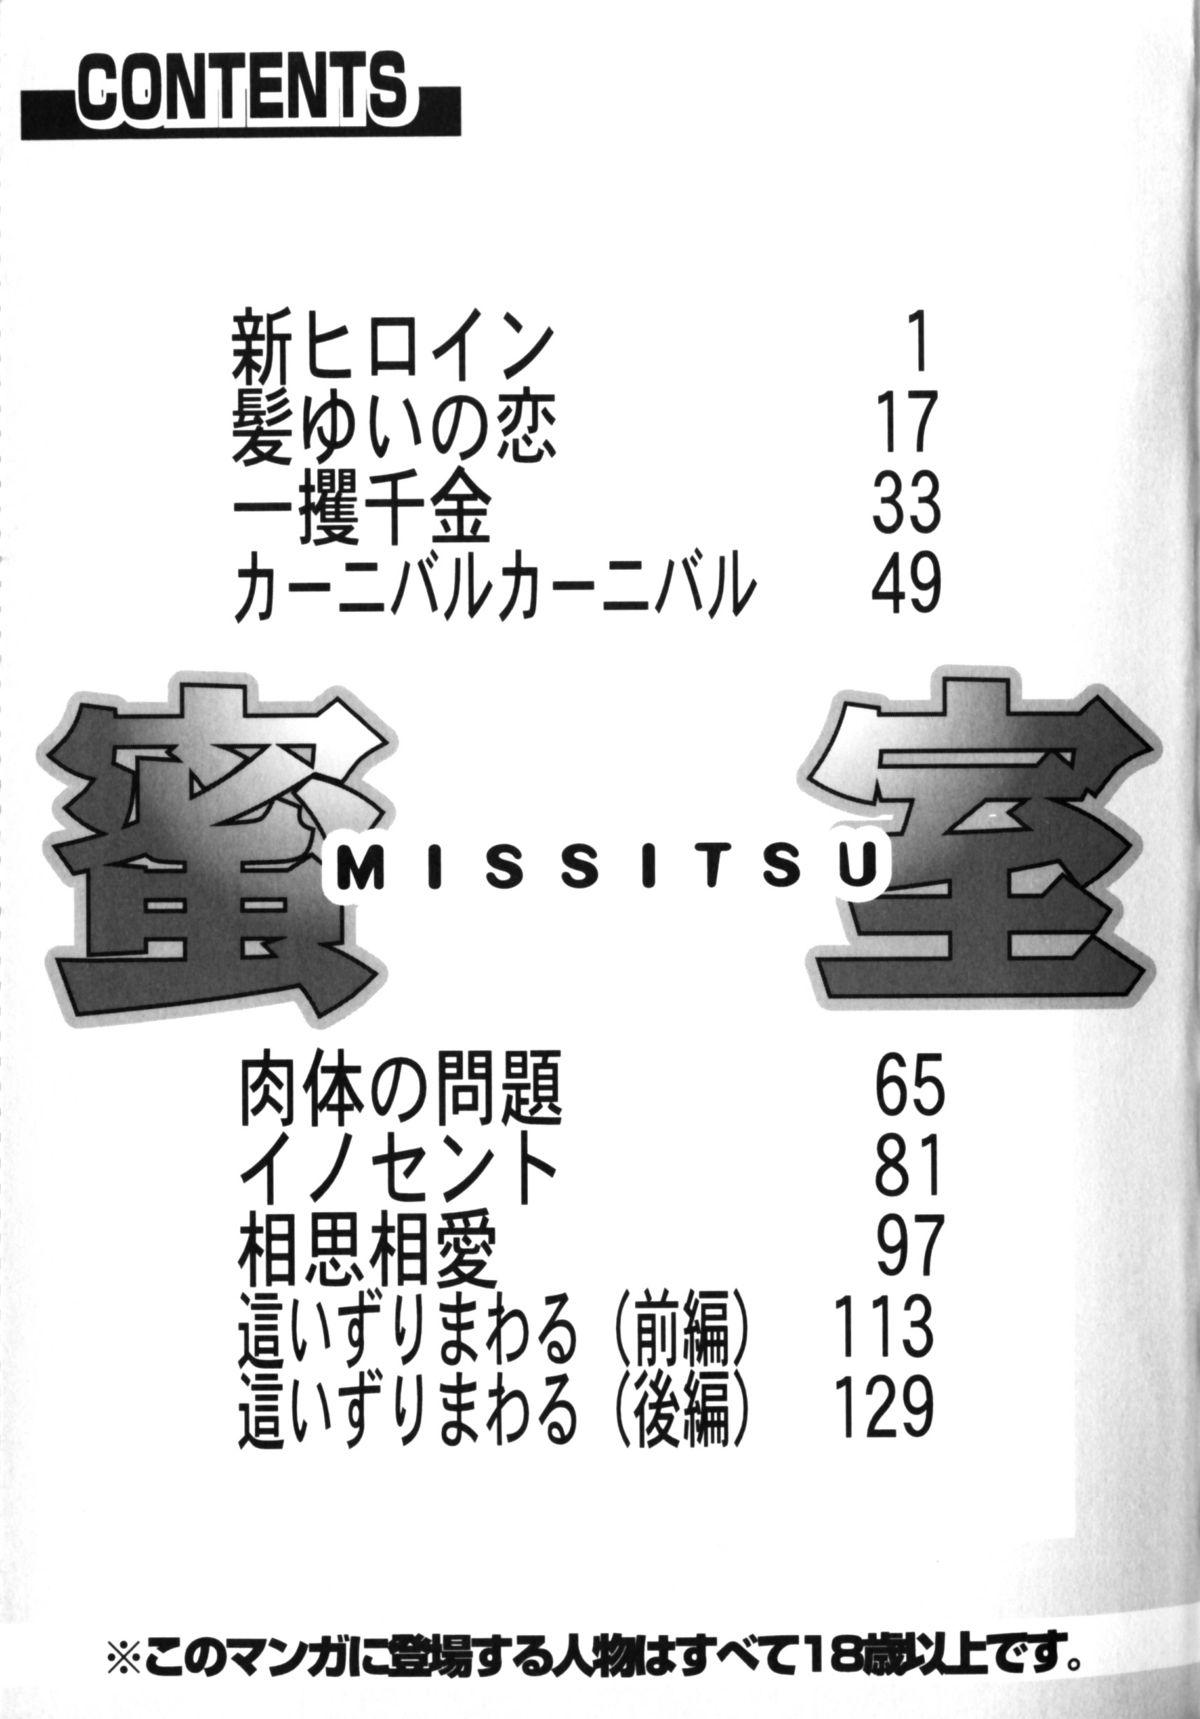 Misshitsu - Honey Room 144